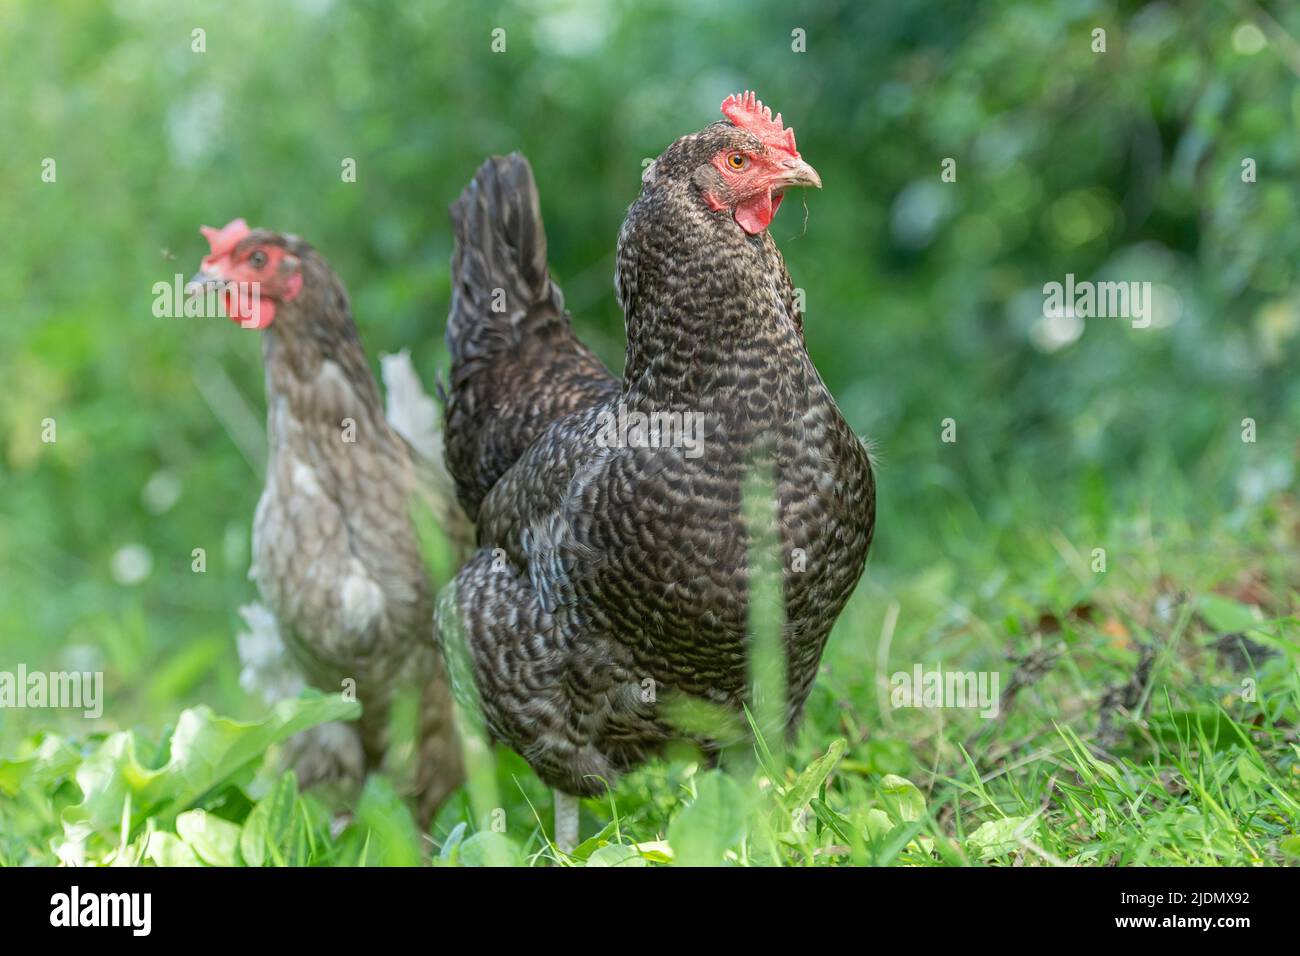 poules en liberté dans un paysage naturel Banque D'Images